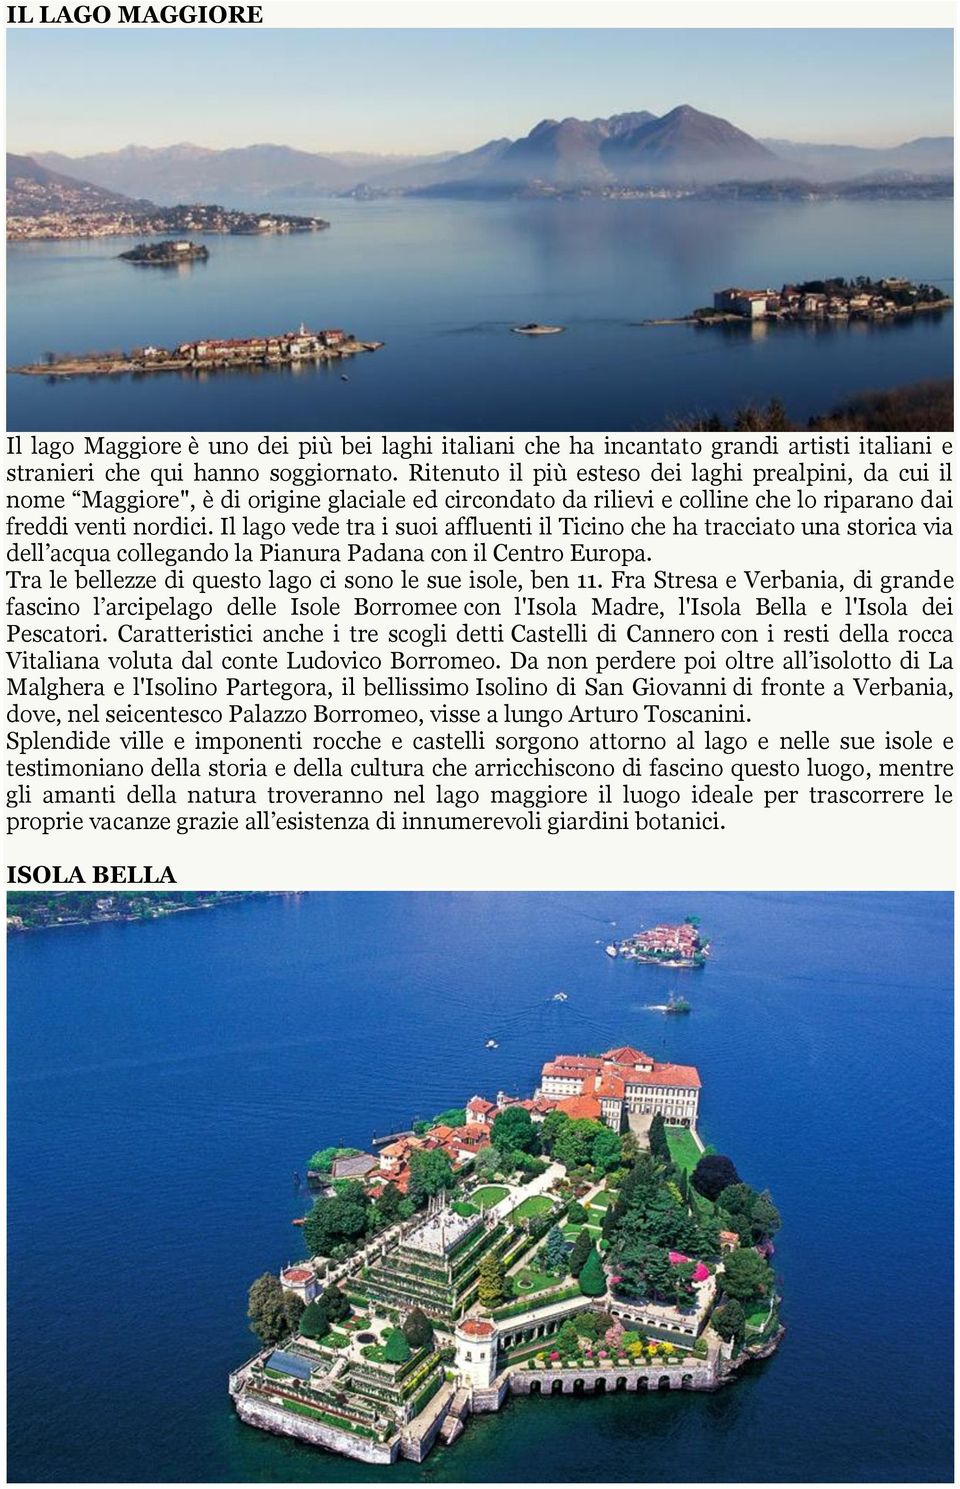 Il lago vede tra i suoi affluenti il Ticino che ha tracciato una storica via dell acqua collegando la Pianura Padana con il Centro Europa. Tra le bellezze di questo lago ci sono le sue isole, ben 11.